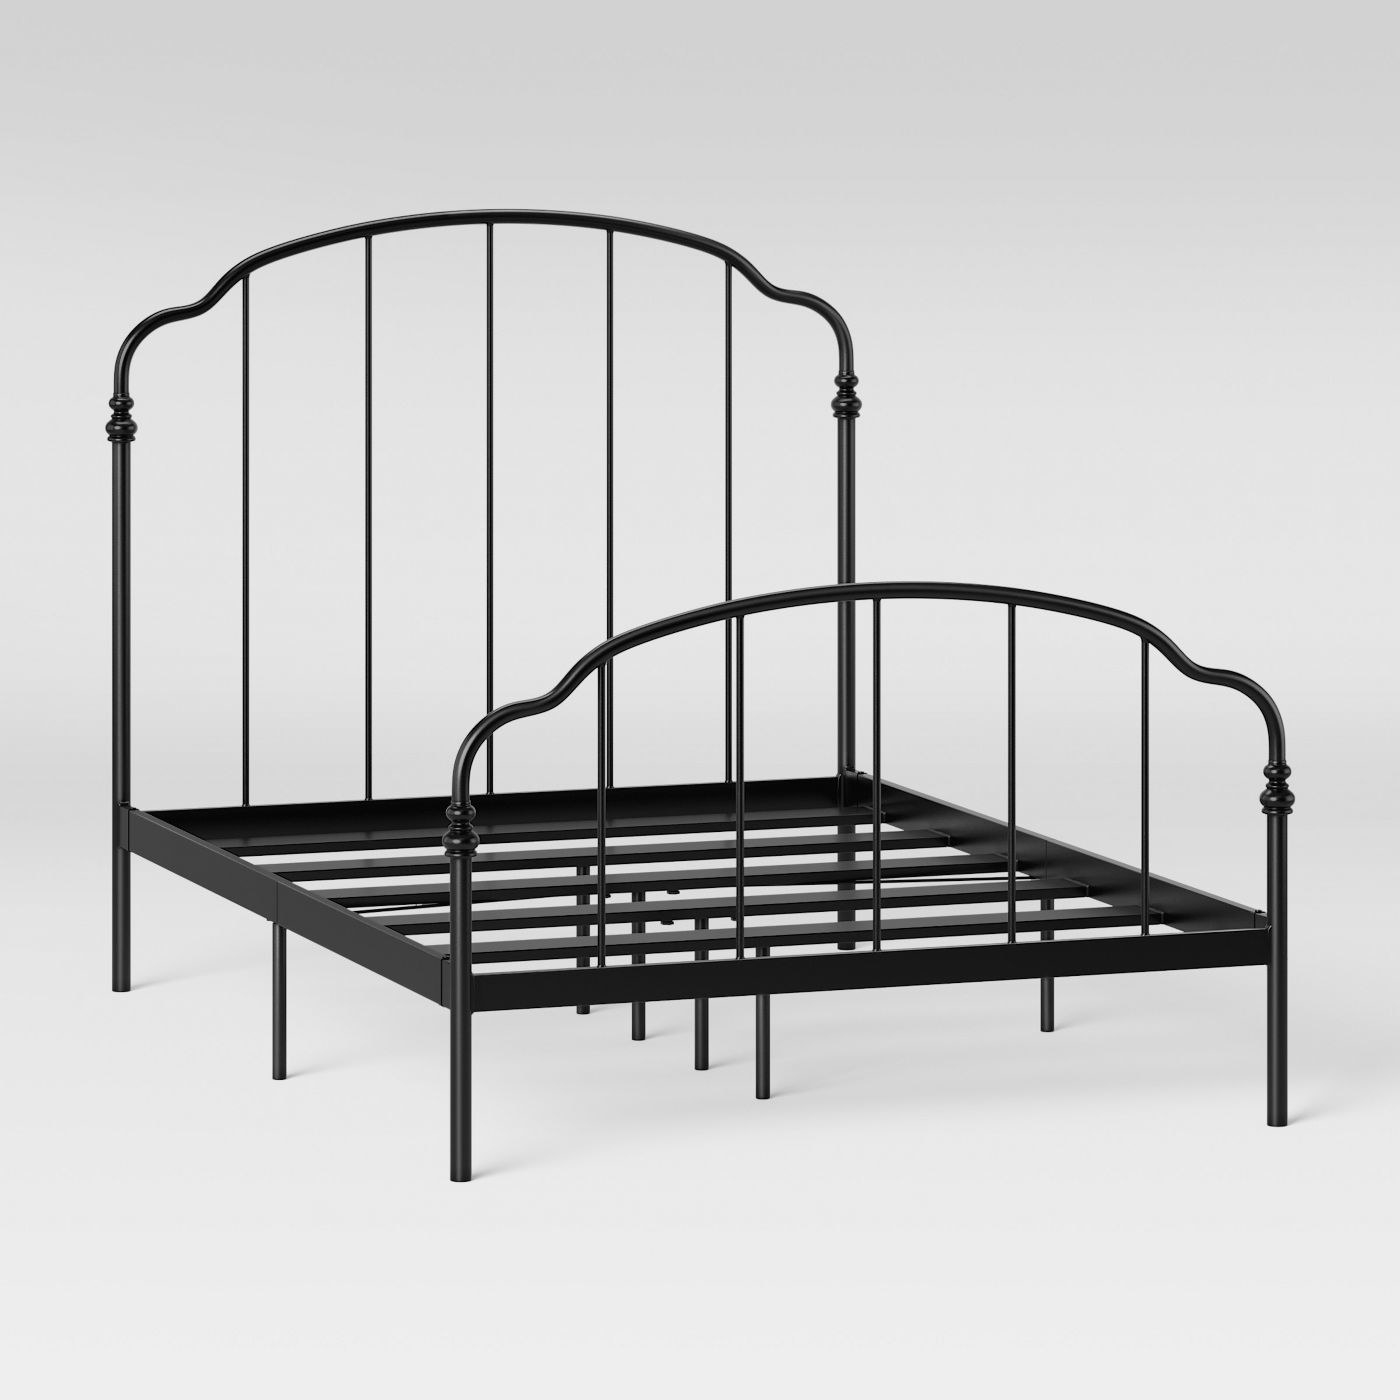 the black bed frame